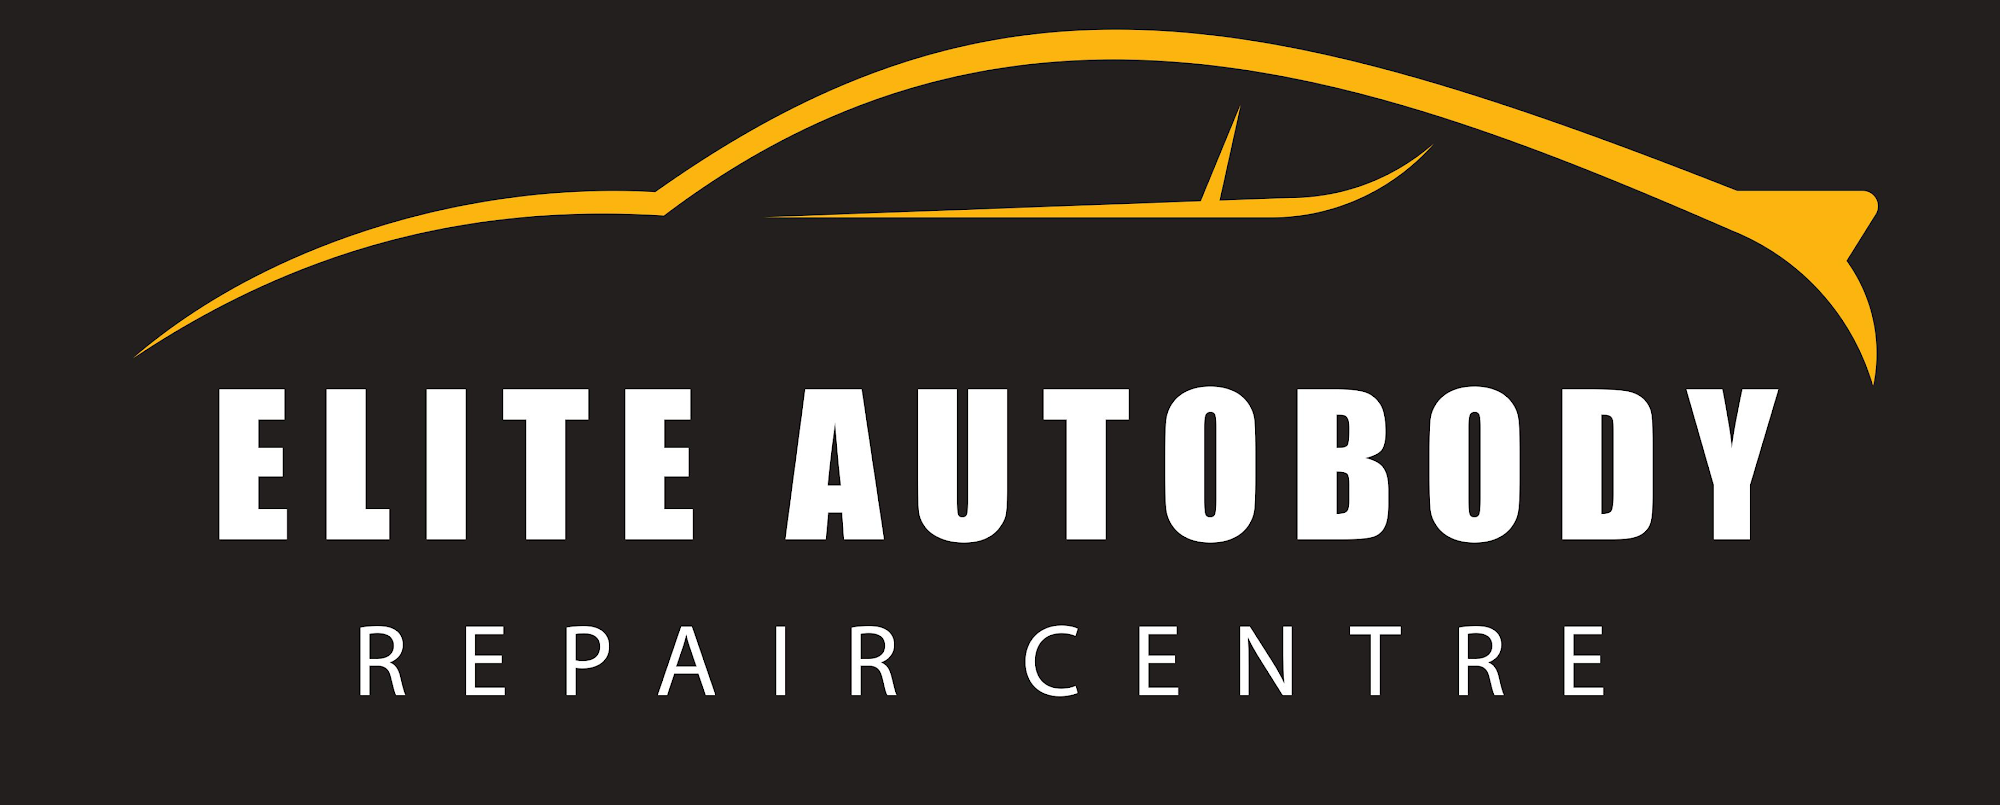 Elite Auto Body Repair Centre